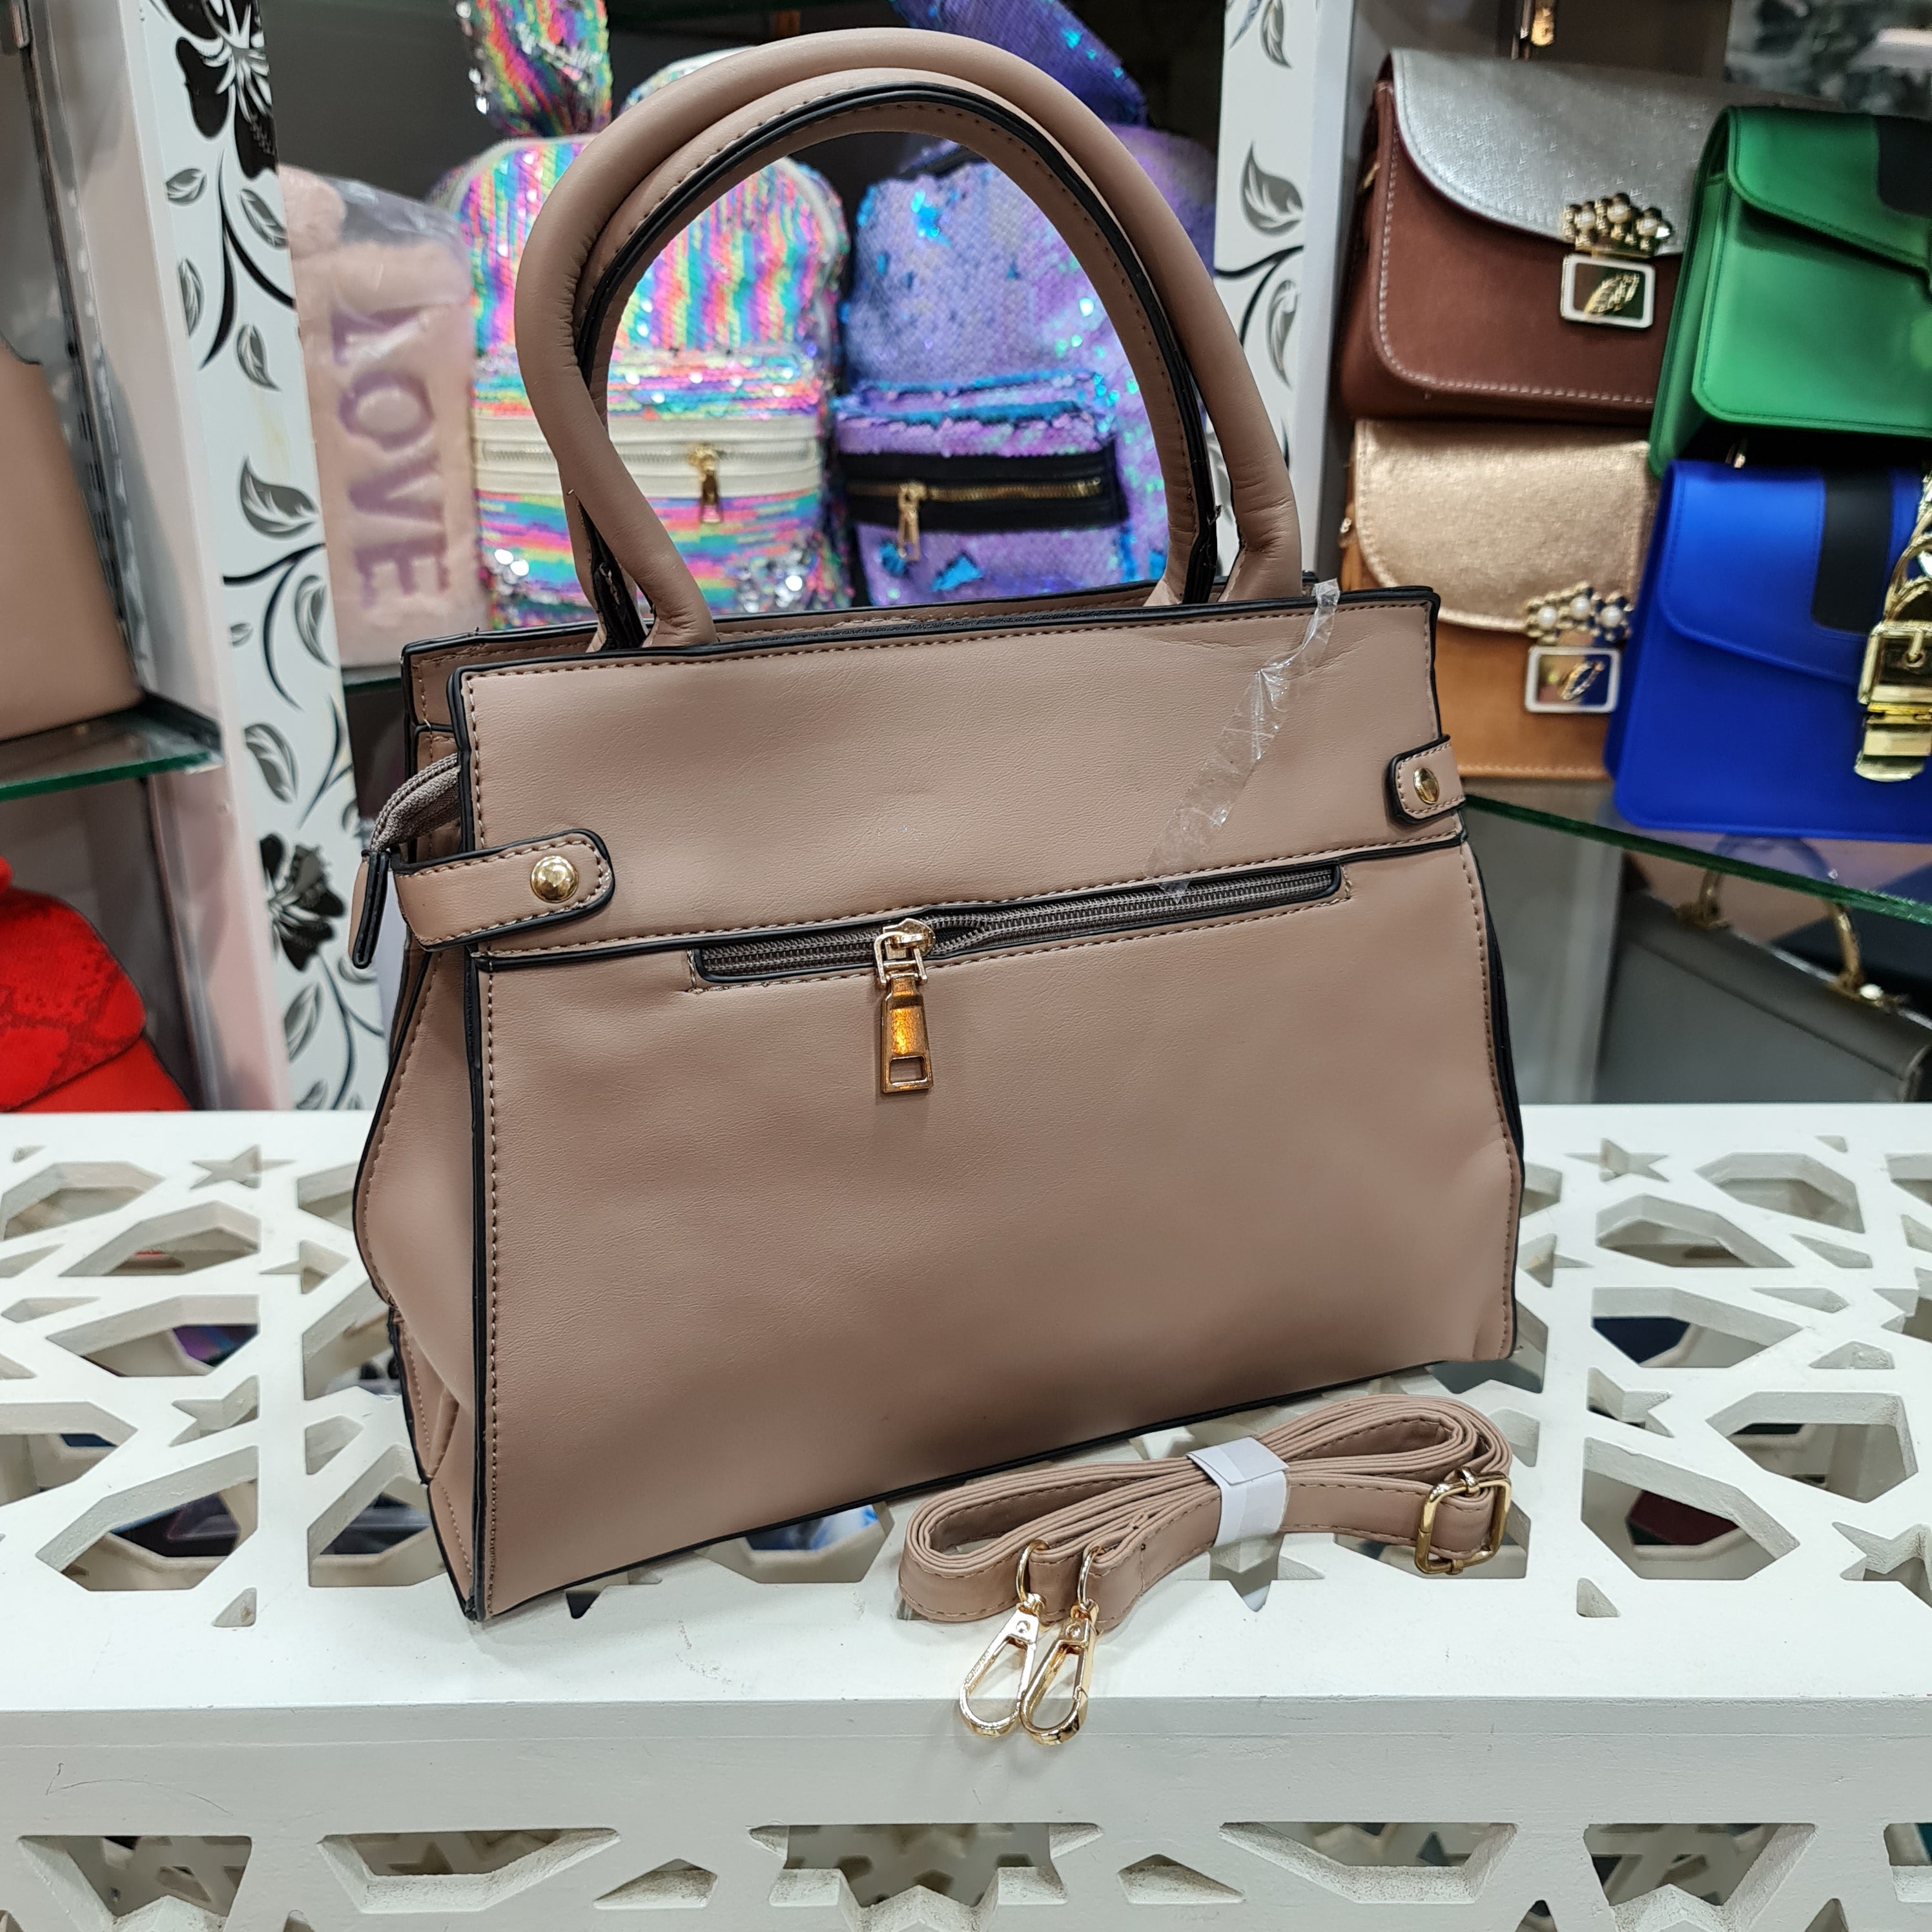 Women's Handbags - Maha fashions -  women's handbags